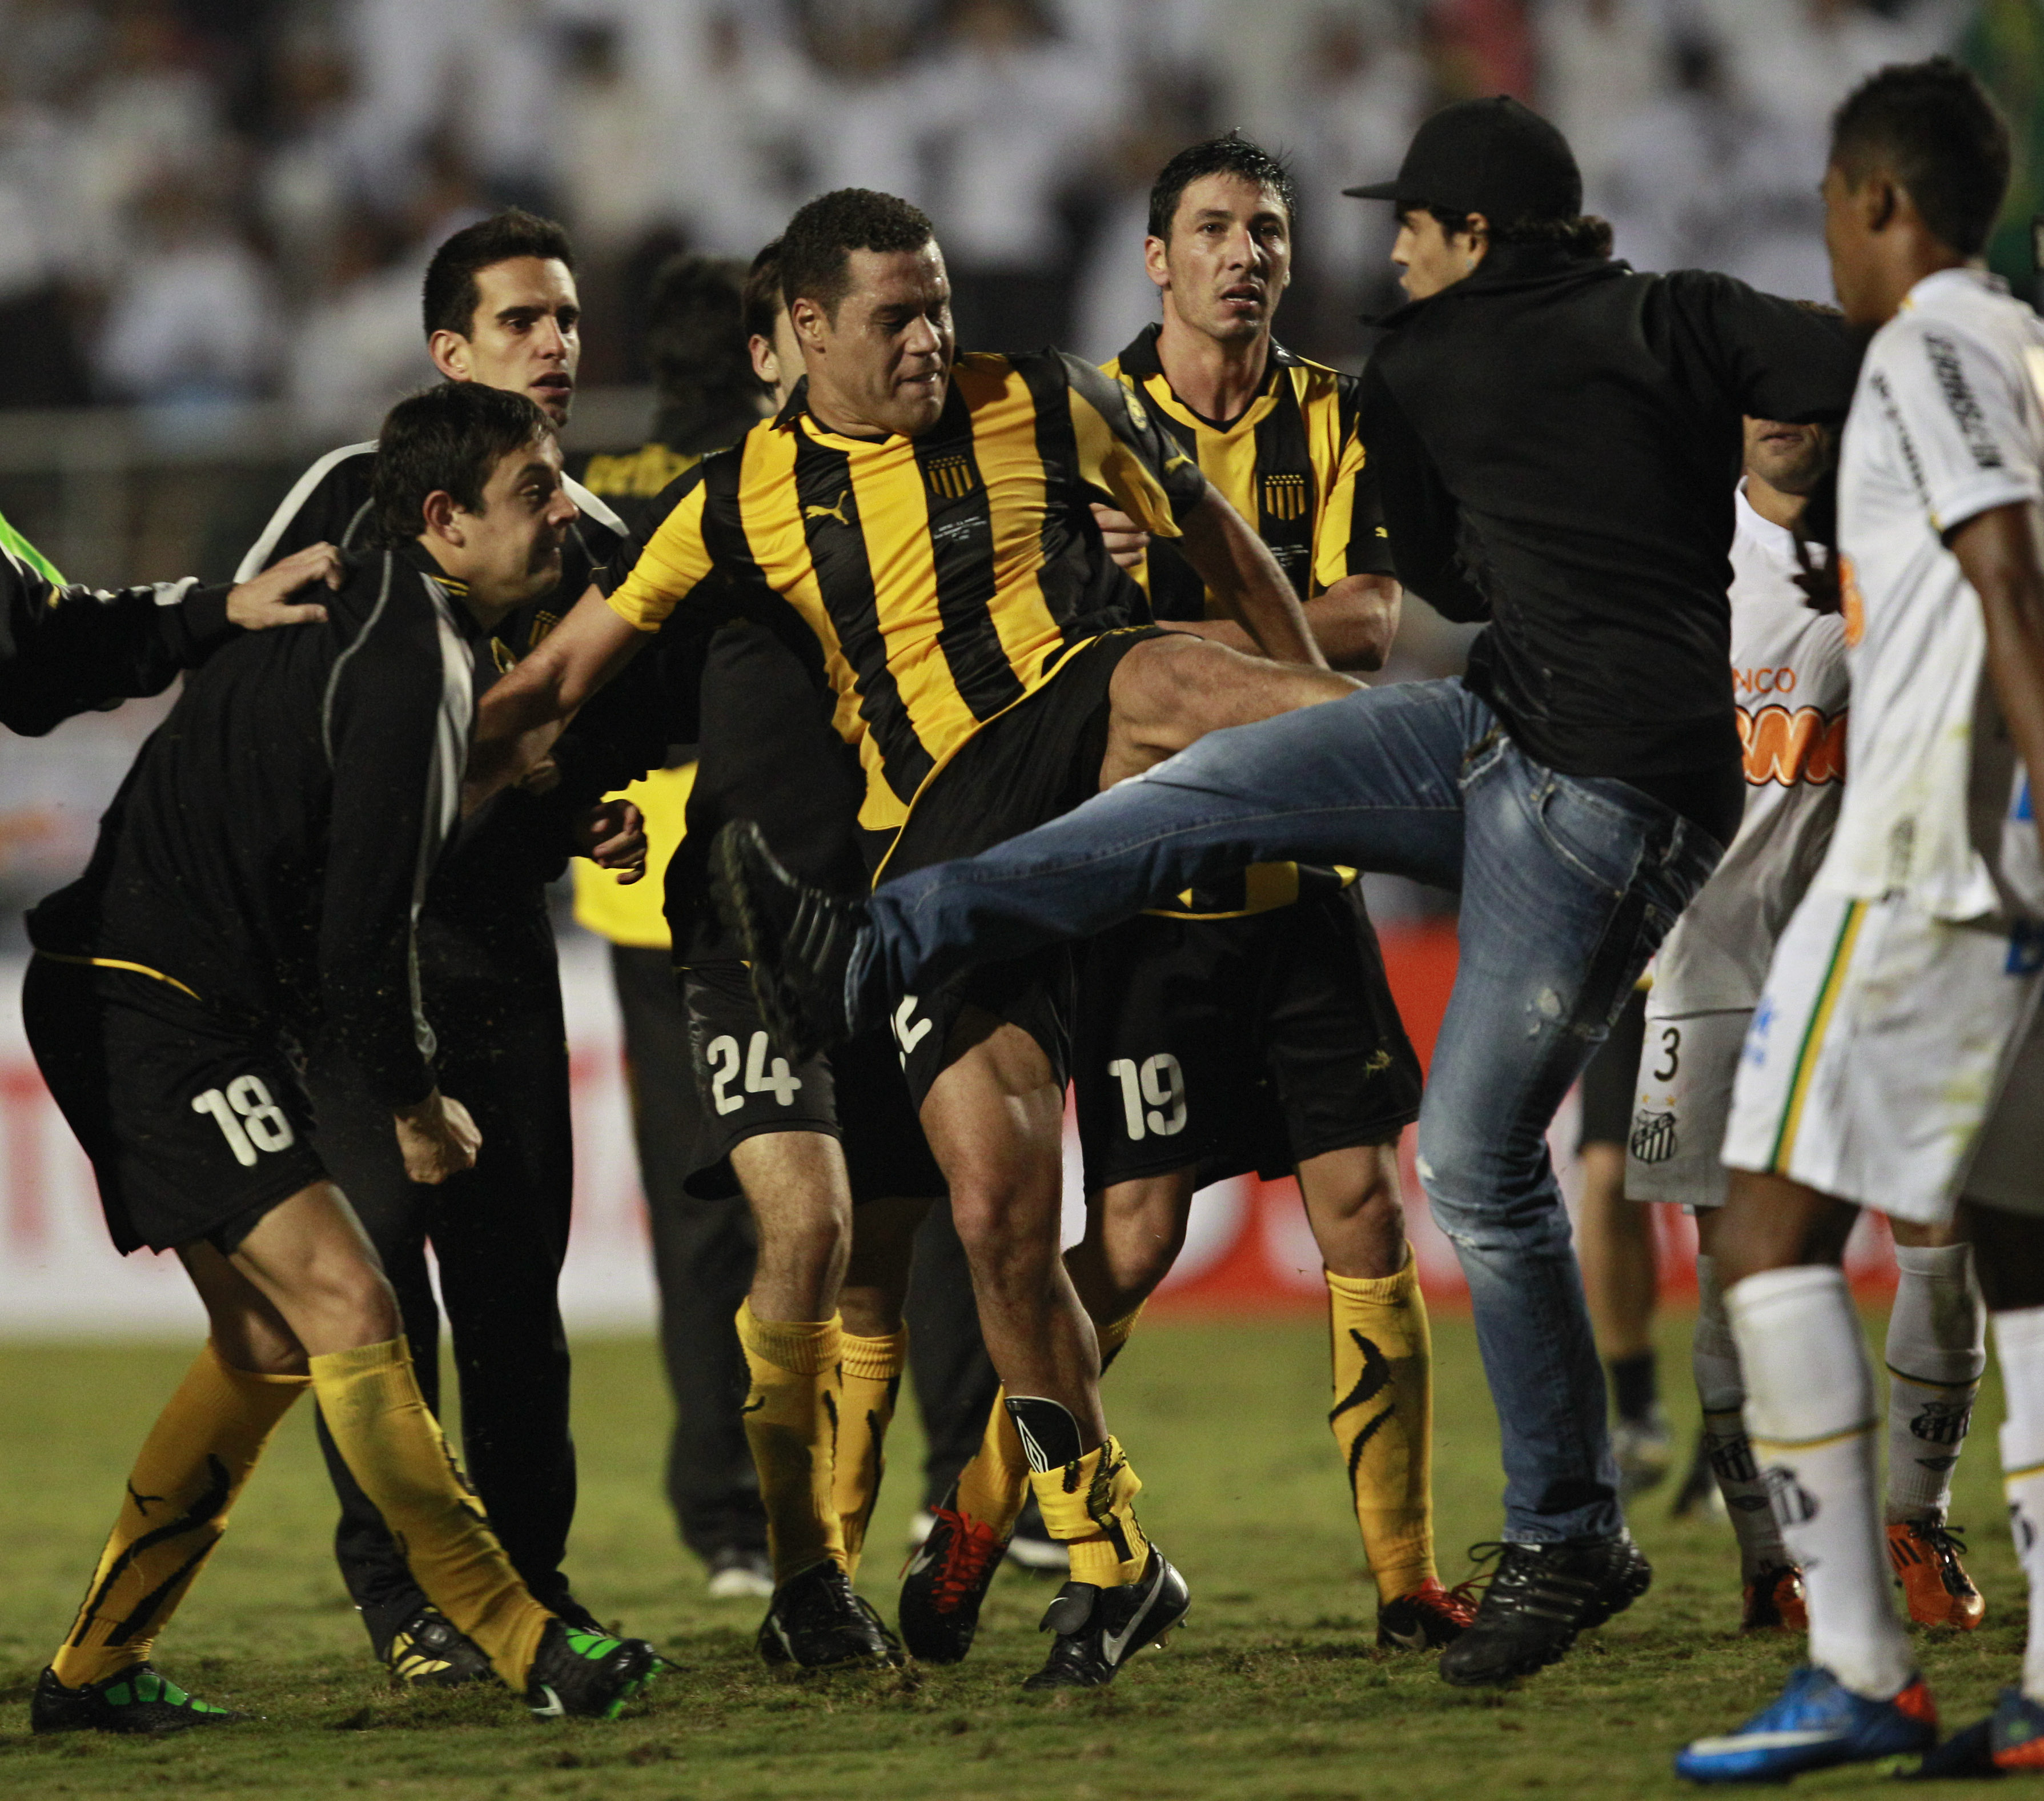 Santos-fansen fick för sig att försvara sina spelare.